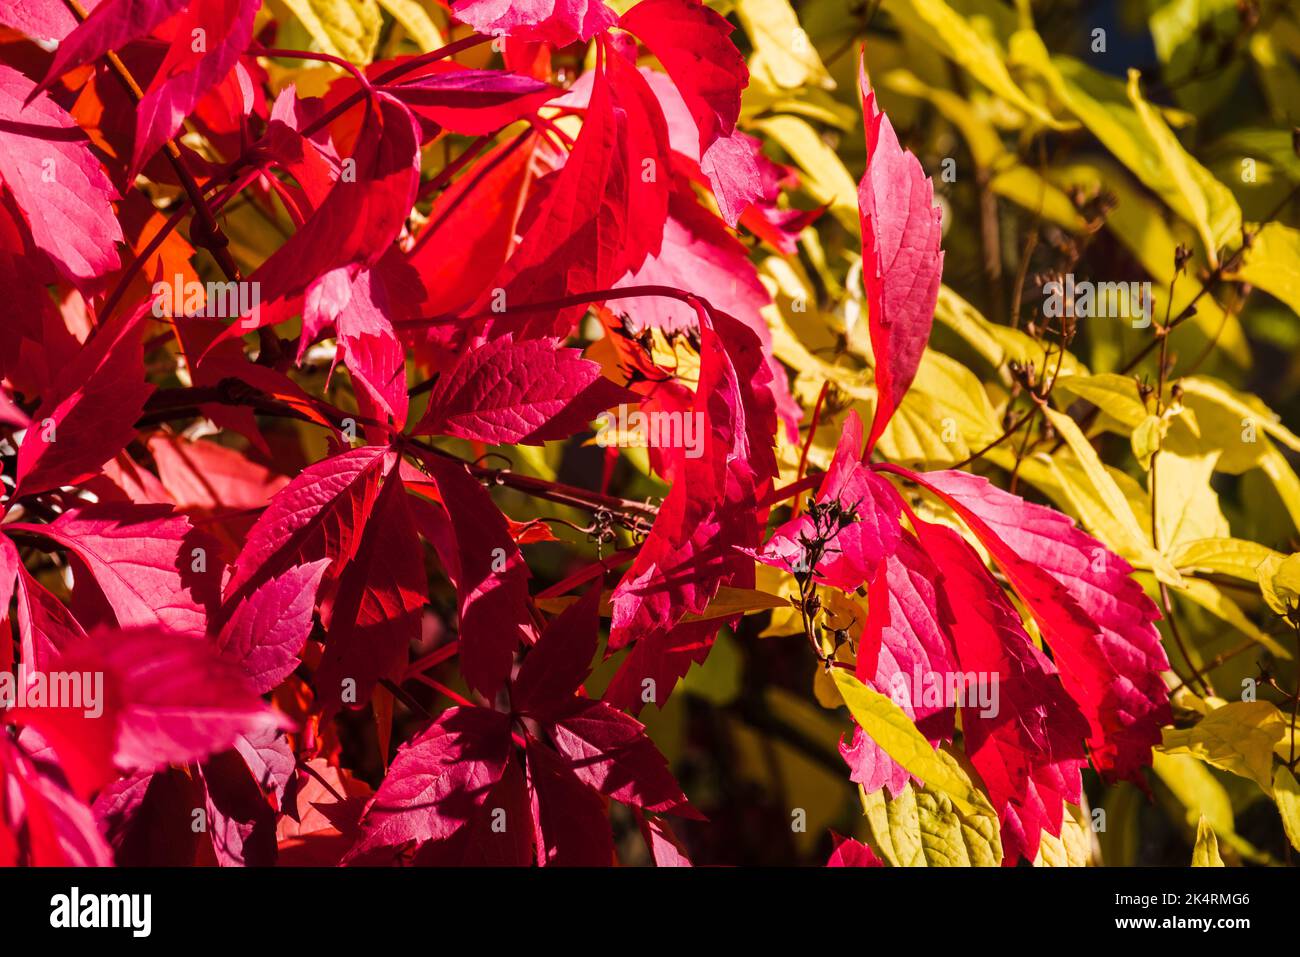 Heller farbenfroher Herbsthintergrund mit roten und gelben Blättern von Parthenocissus quinquefolia, einer dekorativen Kletterpflanze der Traubenfamilie Stockfoto